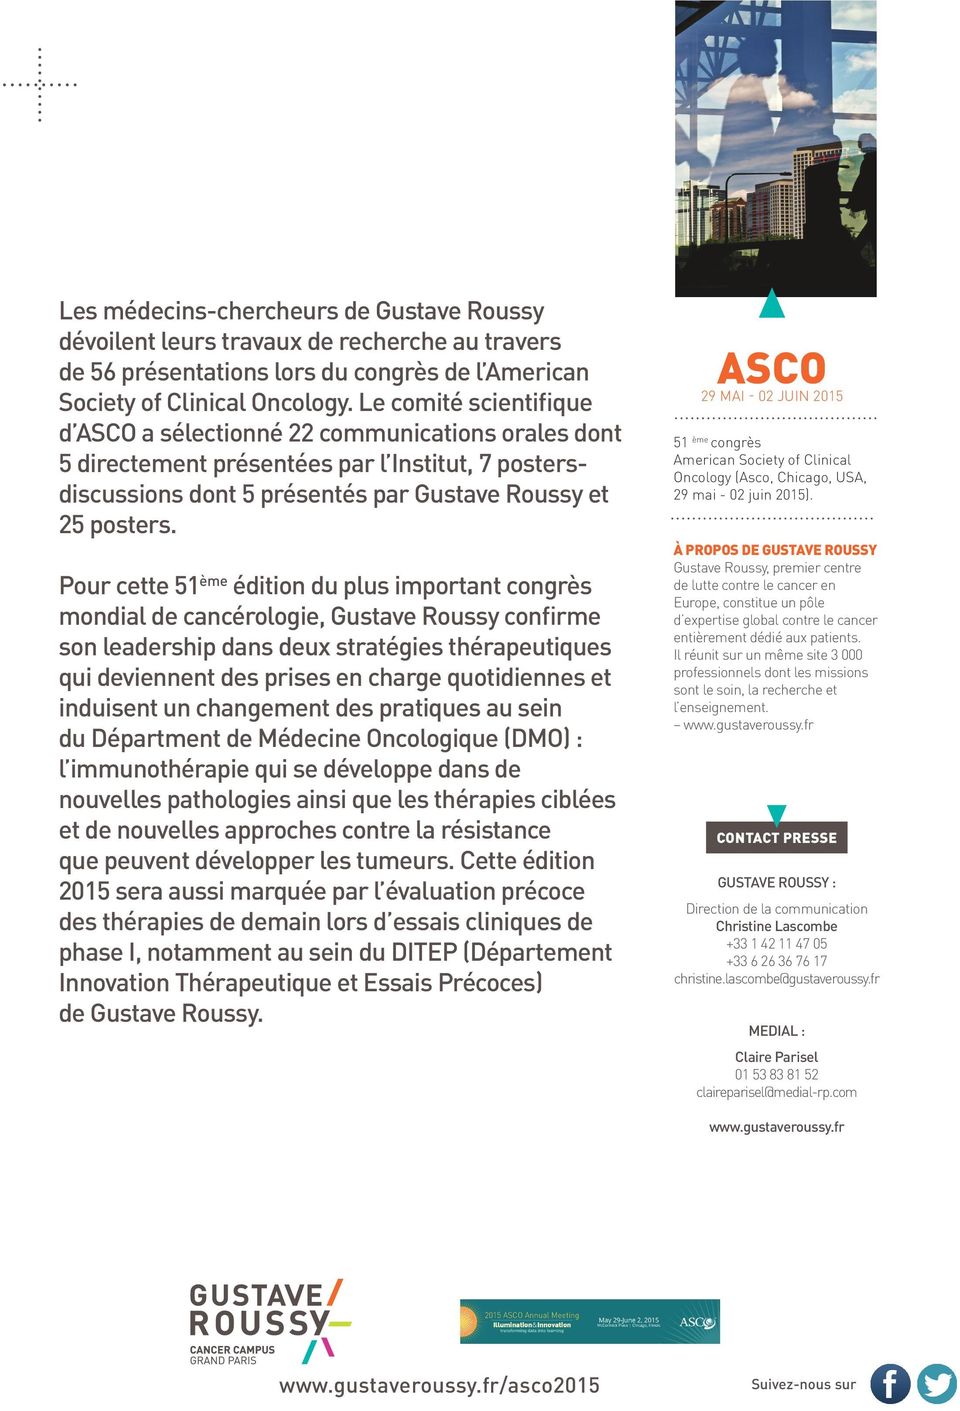 Pour cette 51 ème édition du plus important congrès mondial de cancérologie, Gustave Roussy confirme son leadership dans deux stratégies thérapeutiques qui deviennent des prises en charge